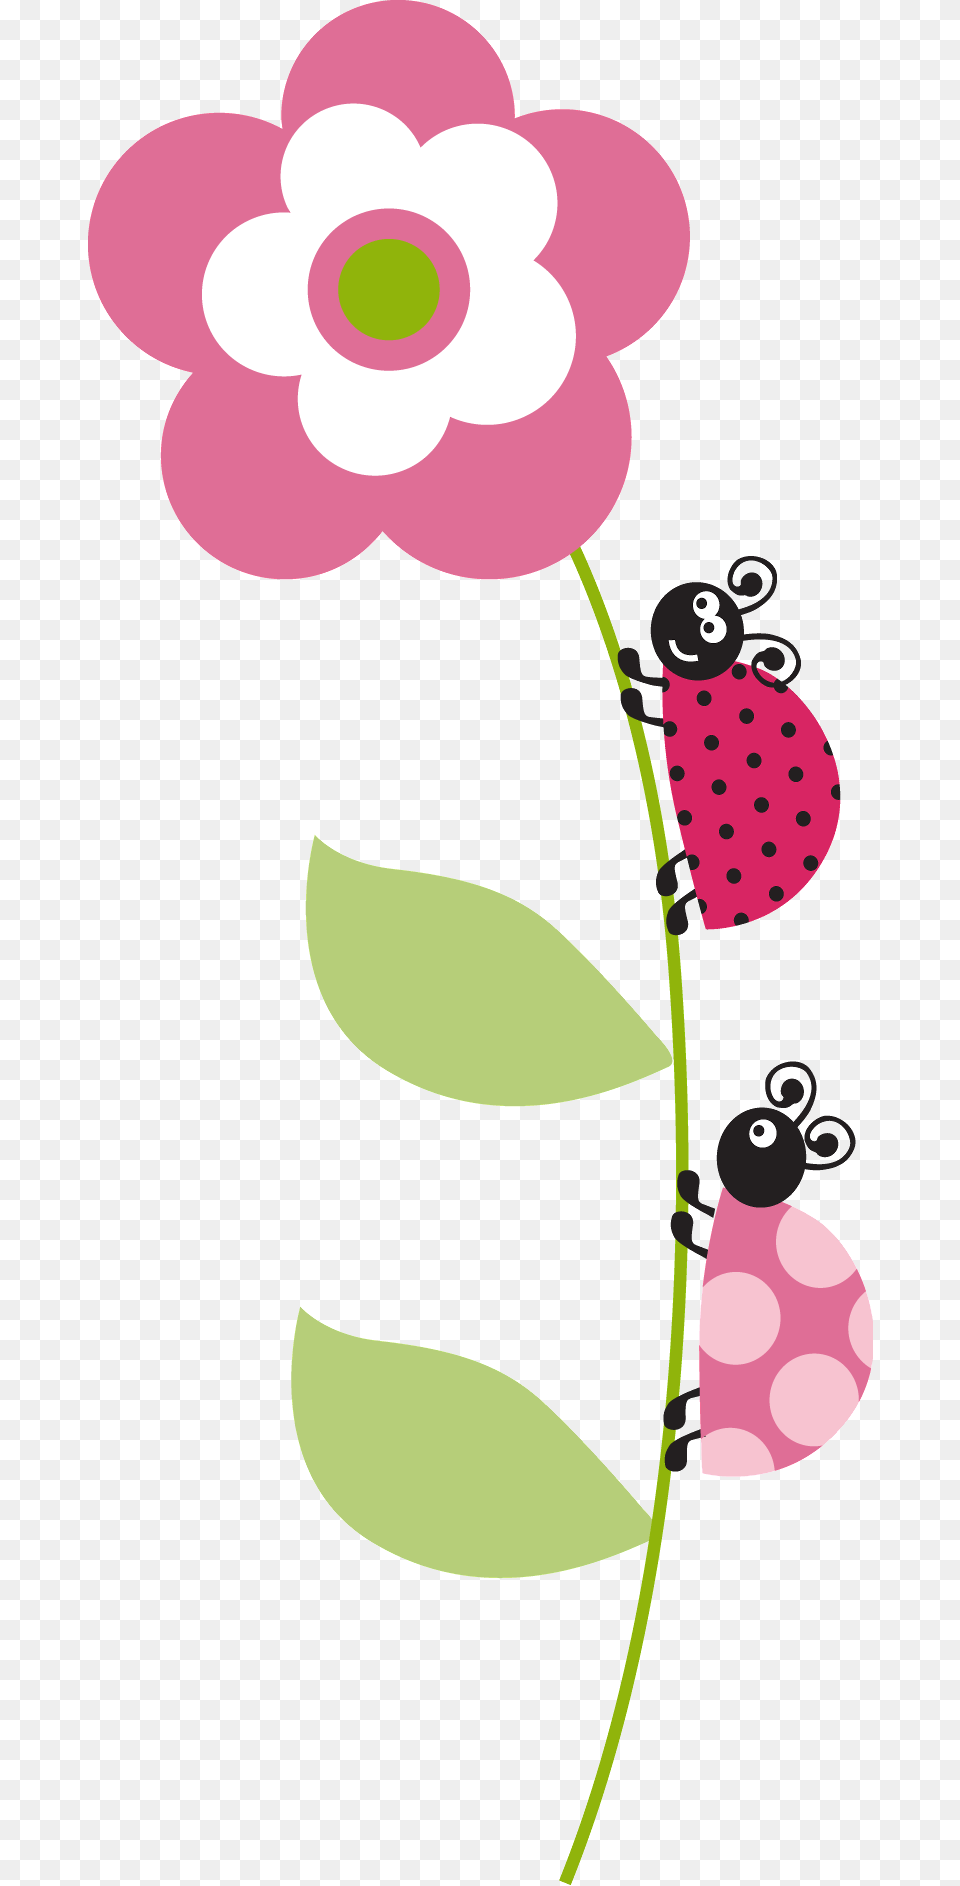 Dibujos De Mariquitas Y Flores, Berry, Flower, Food, Fruit Free Transparent Png